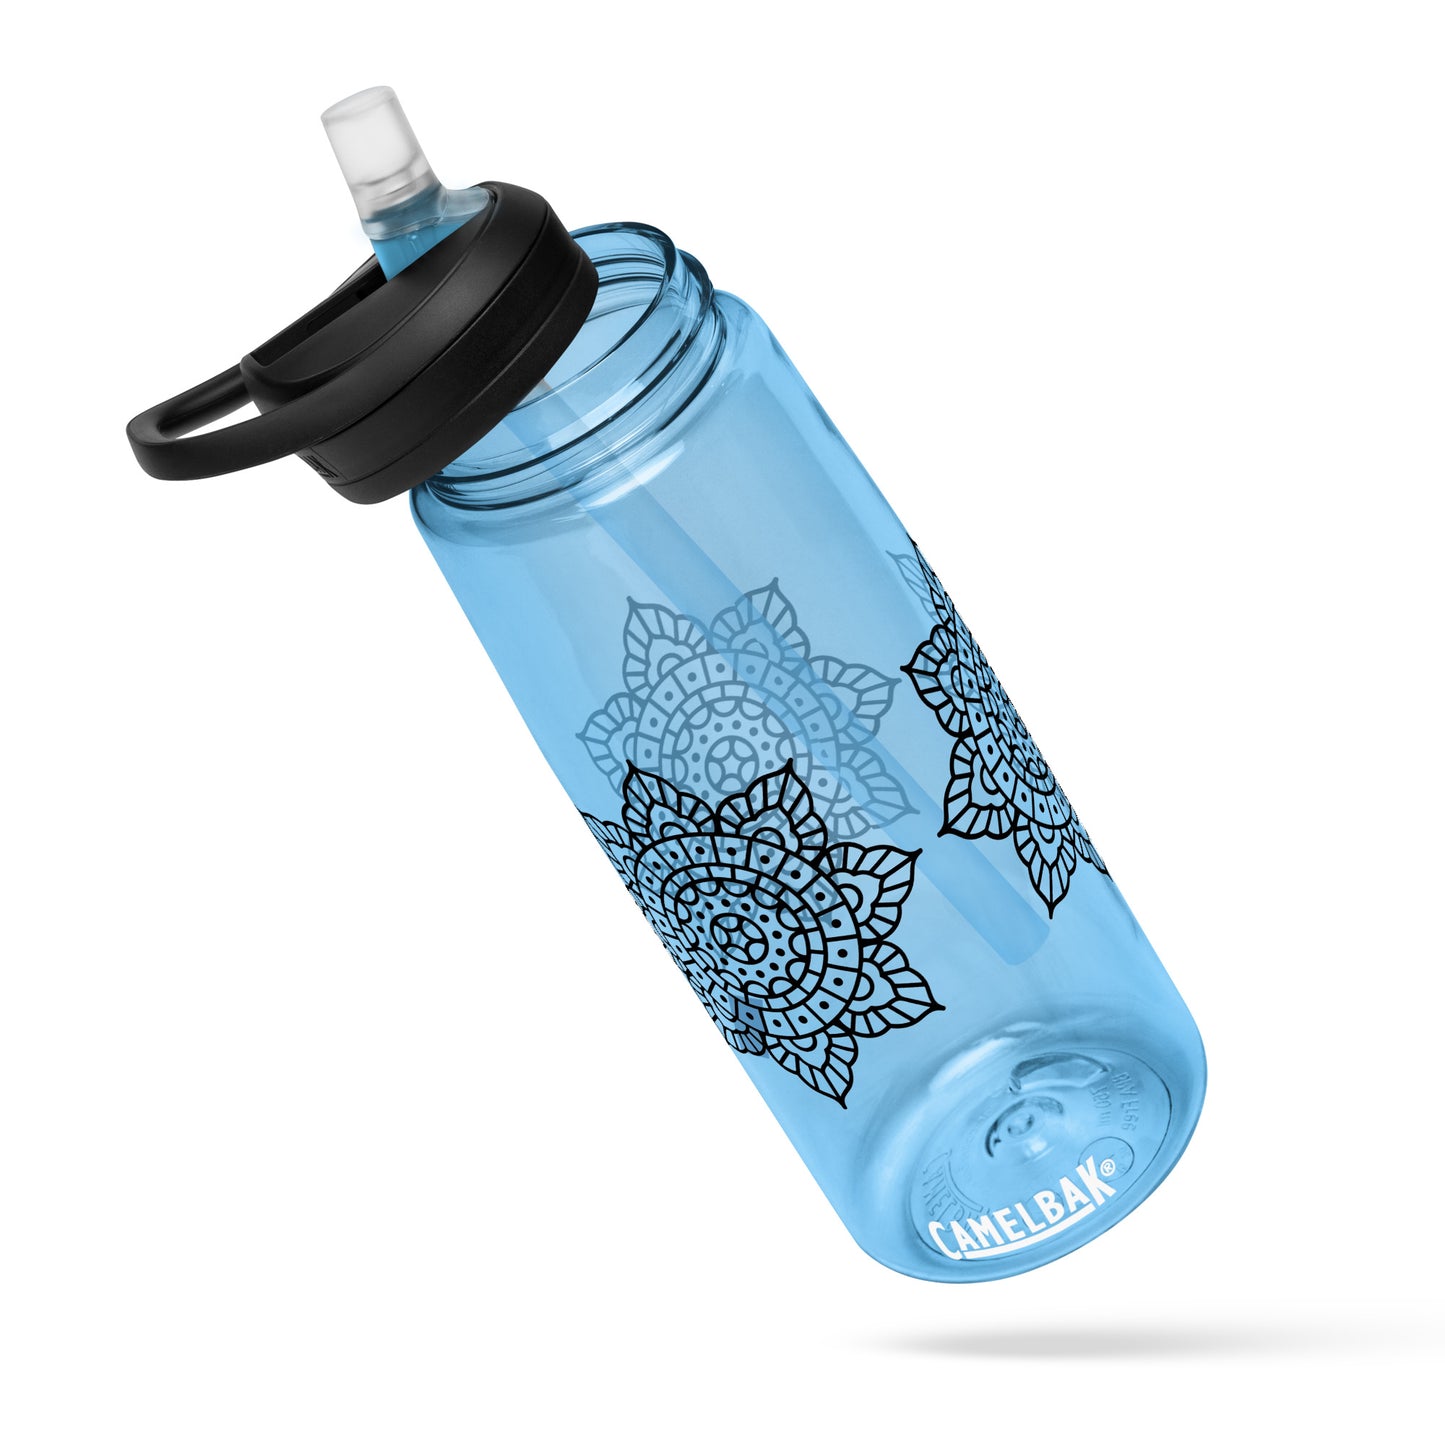 Mandala water bottle